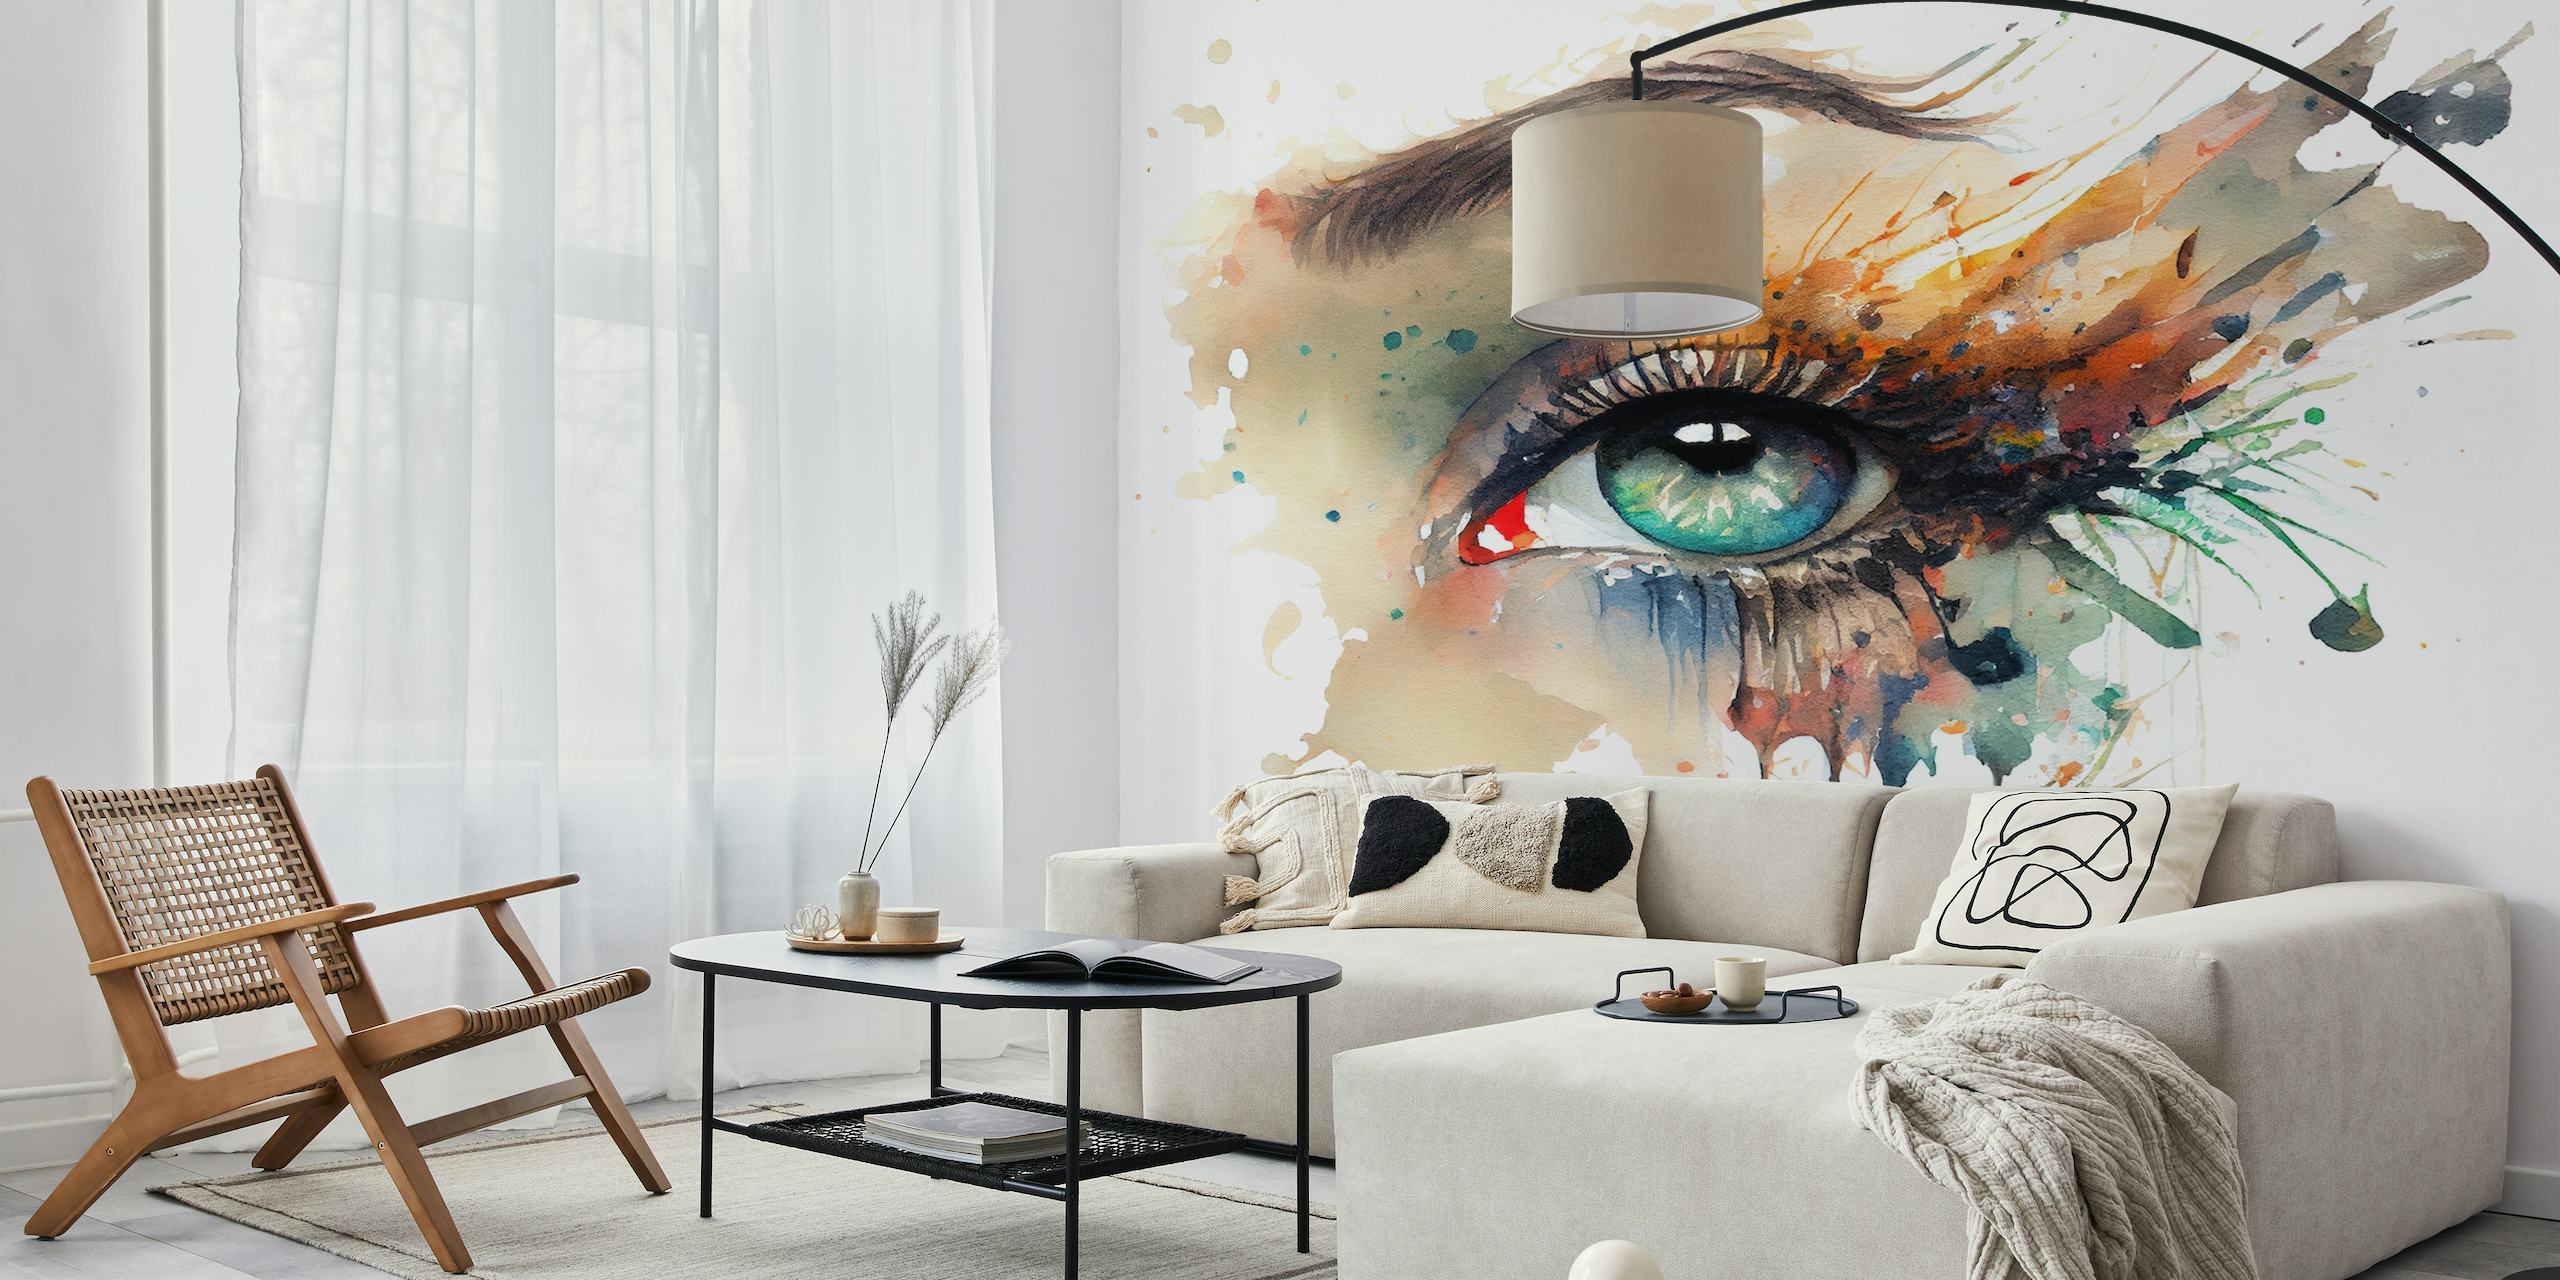 Taiteellinen seinämaalaus akvarellimaalatusta naisen silmästä eloisilla väreillä ja tippuvalla maaliefektillä